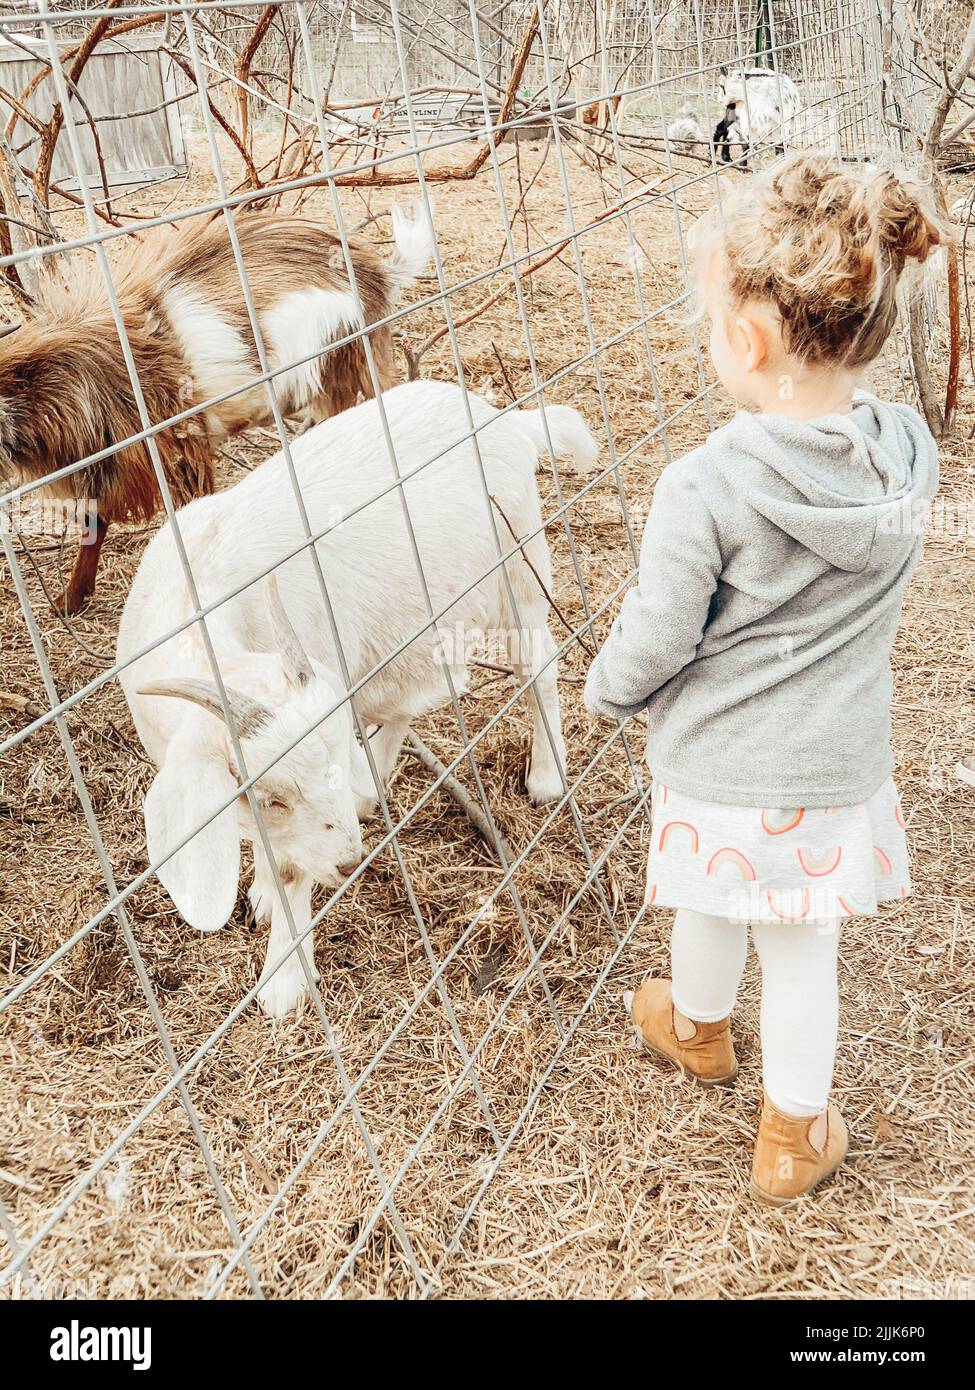 Eine vertikale Aufnahme eines kleinen Mädchens, das durch einen Drahtzaun Ziegen ansieht Stockfoto